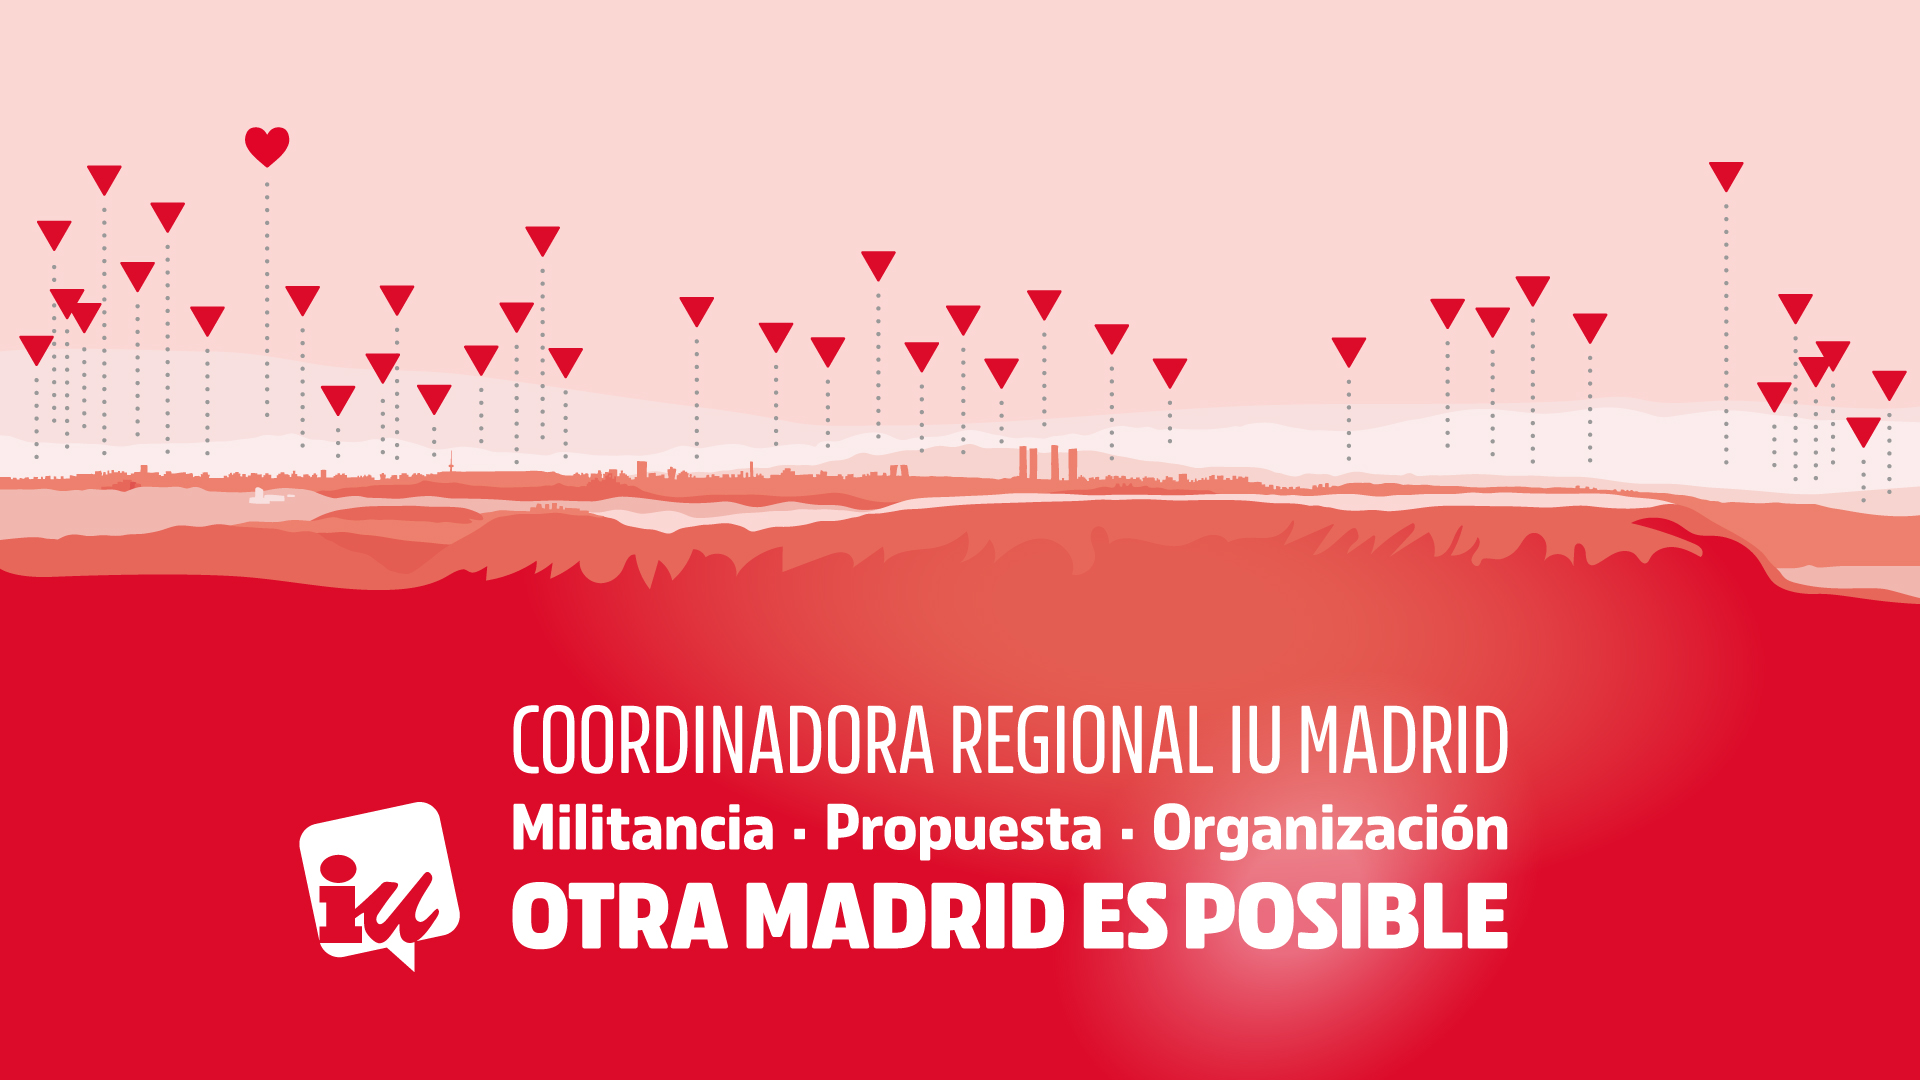 La Coordinadora Regional aprueba el preacuerdo con Podemos y el Proceso de Primarias para la Comunidad